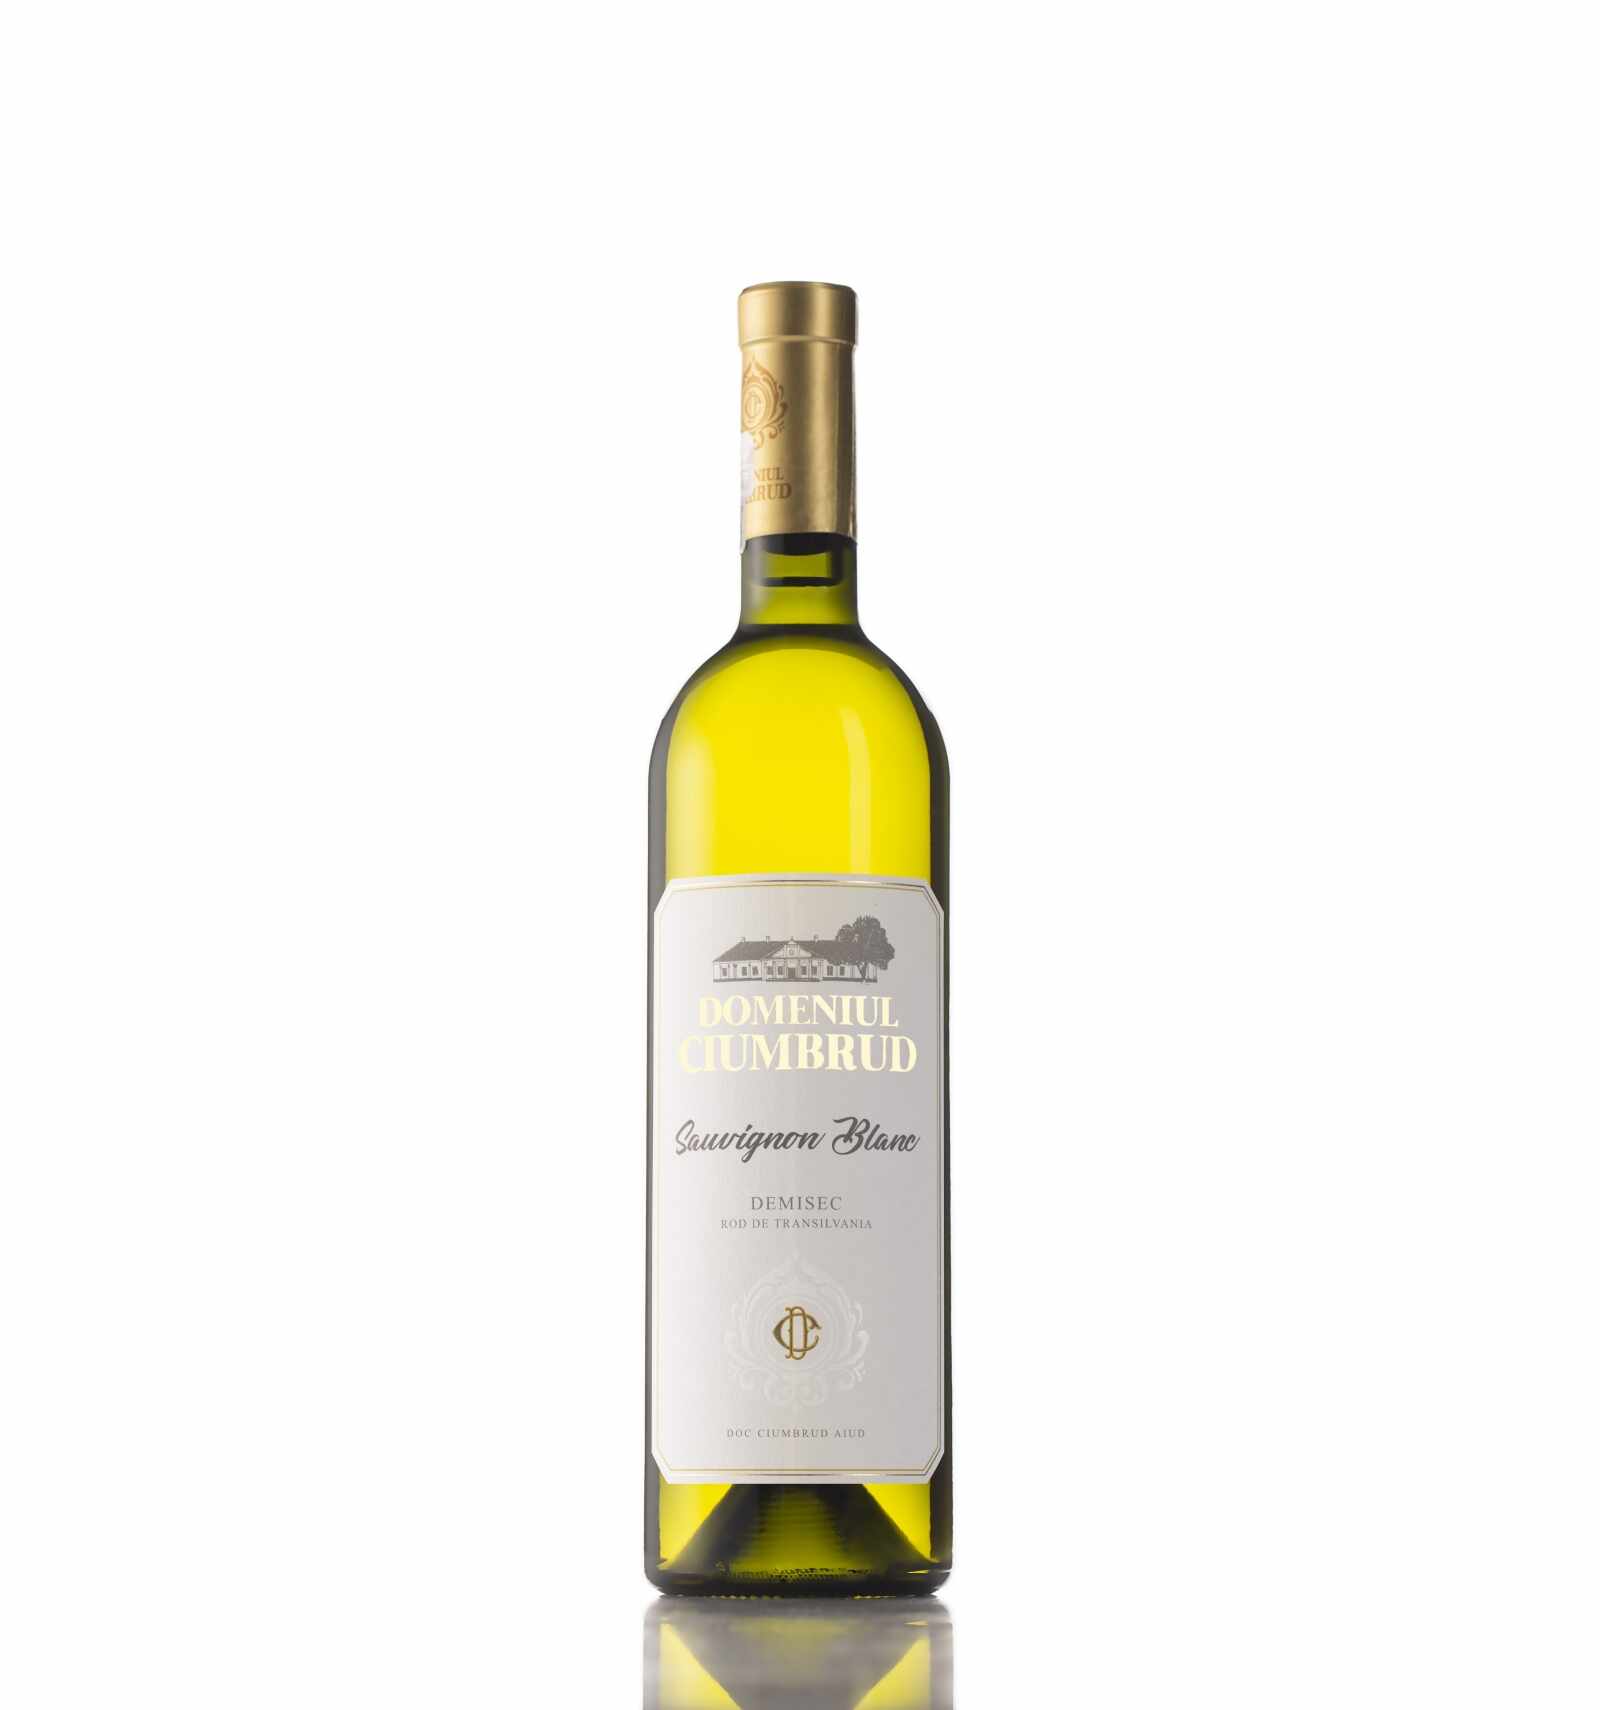 Vin alb demisec, Sauvignon Blanc, Domeniul Ciumbrud, 12.5% alc., 0.75L, Romania